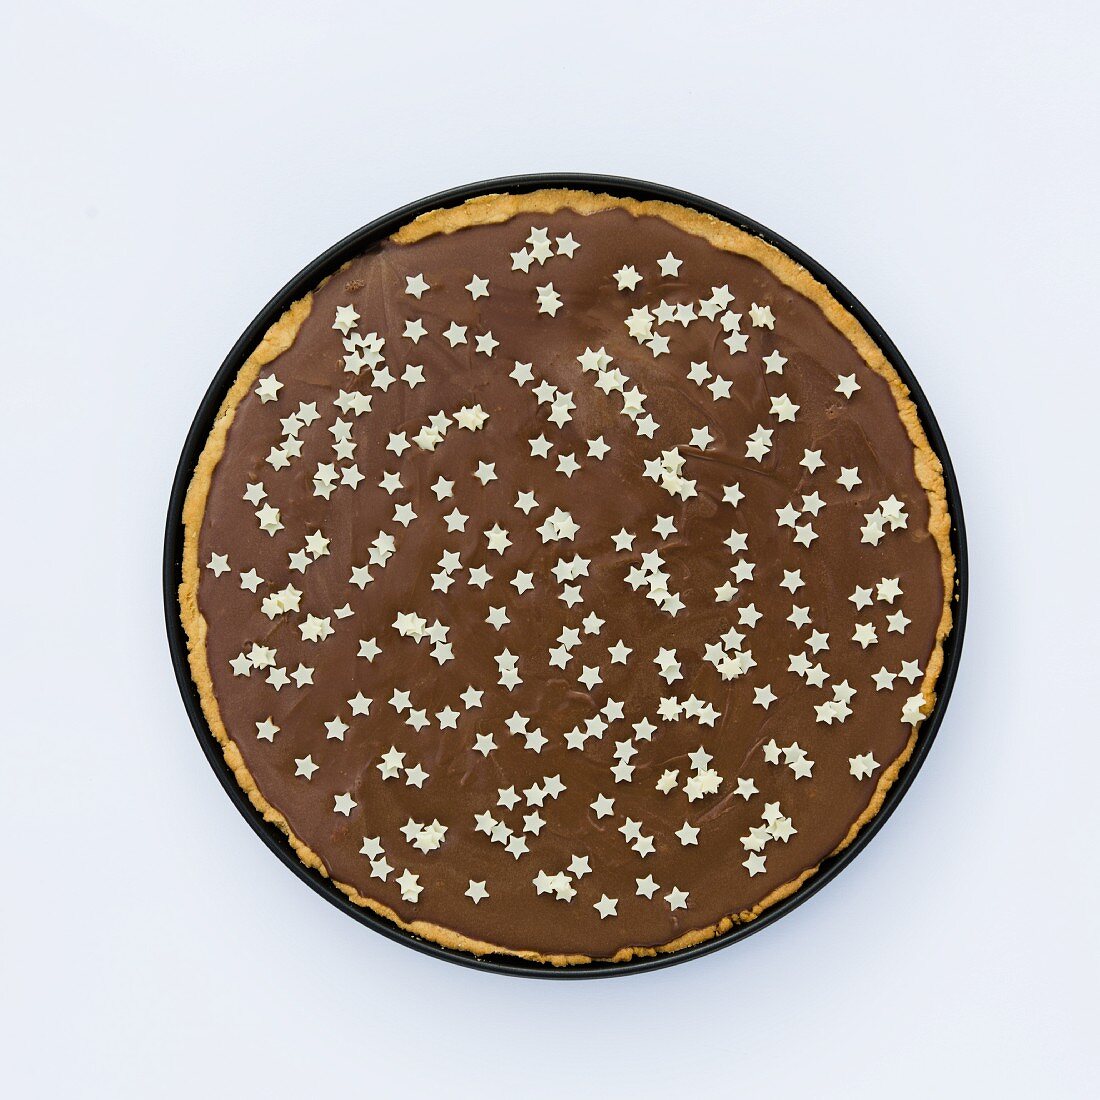 Tarte Au Chocolat mit kleinen weißen Sternchen als Deko (Draufsicht)